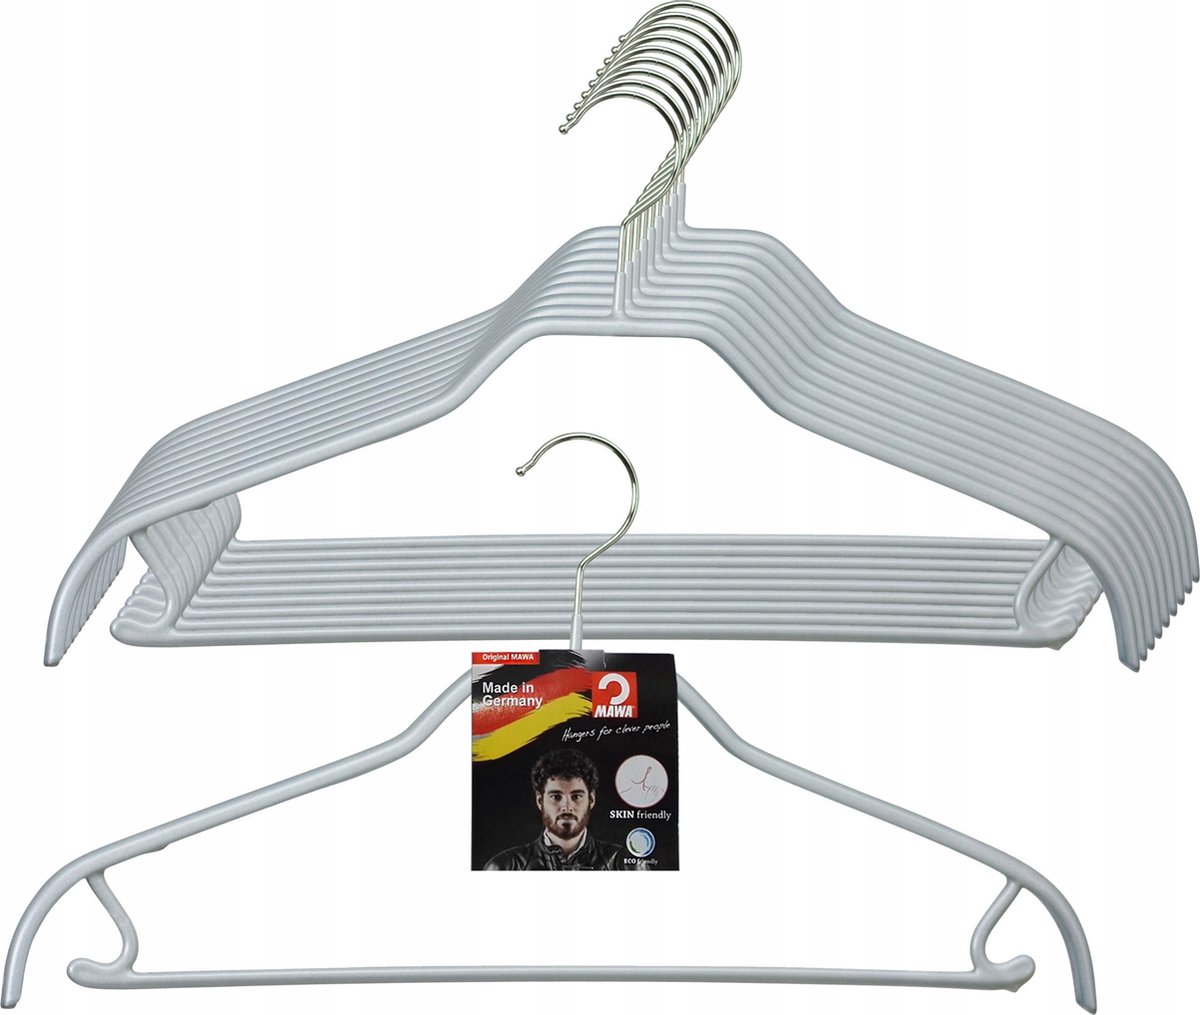 [Set van 5] MAWA 41FRS - metalen kleding hangers met broeklat, rokhaken en zilveren anti-slip coating, 41CM breed